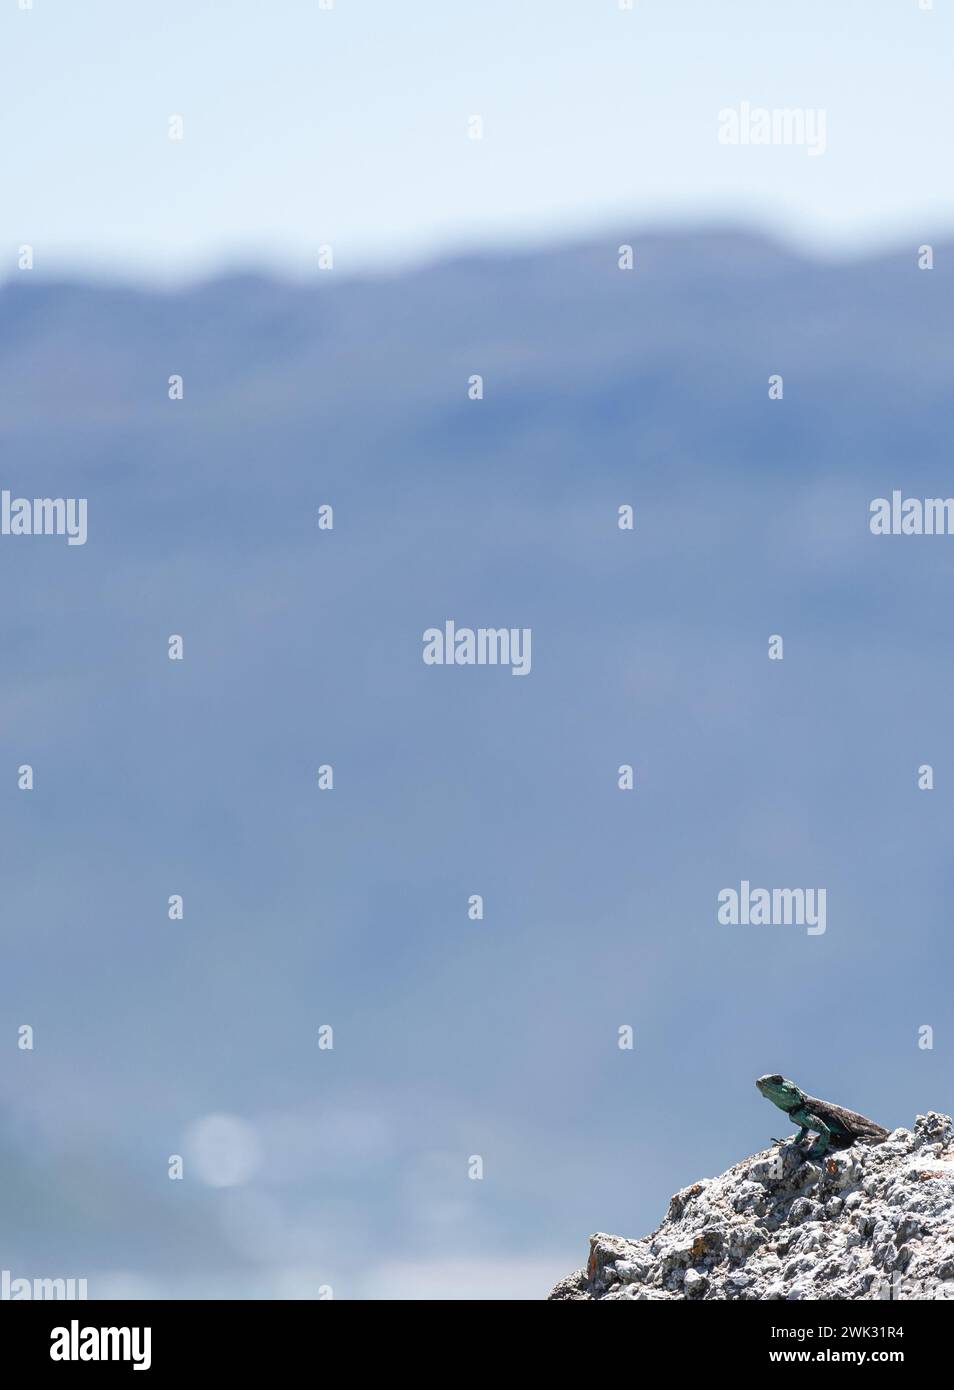 Kleine niedliche Tierechse in der Wildnis auf dem Felsen in der unteren rechten Ecke des Rahmens blickt in die Ferne. Sommer Natur Tiertapete. Blauer Hintergrund Stockfoto